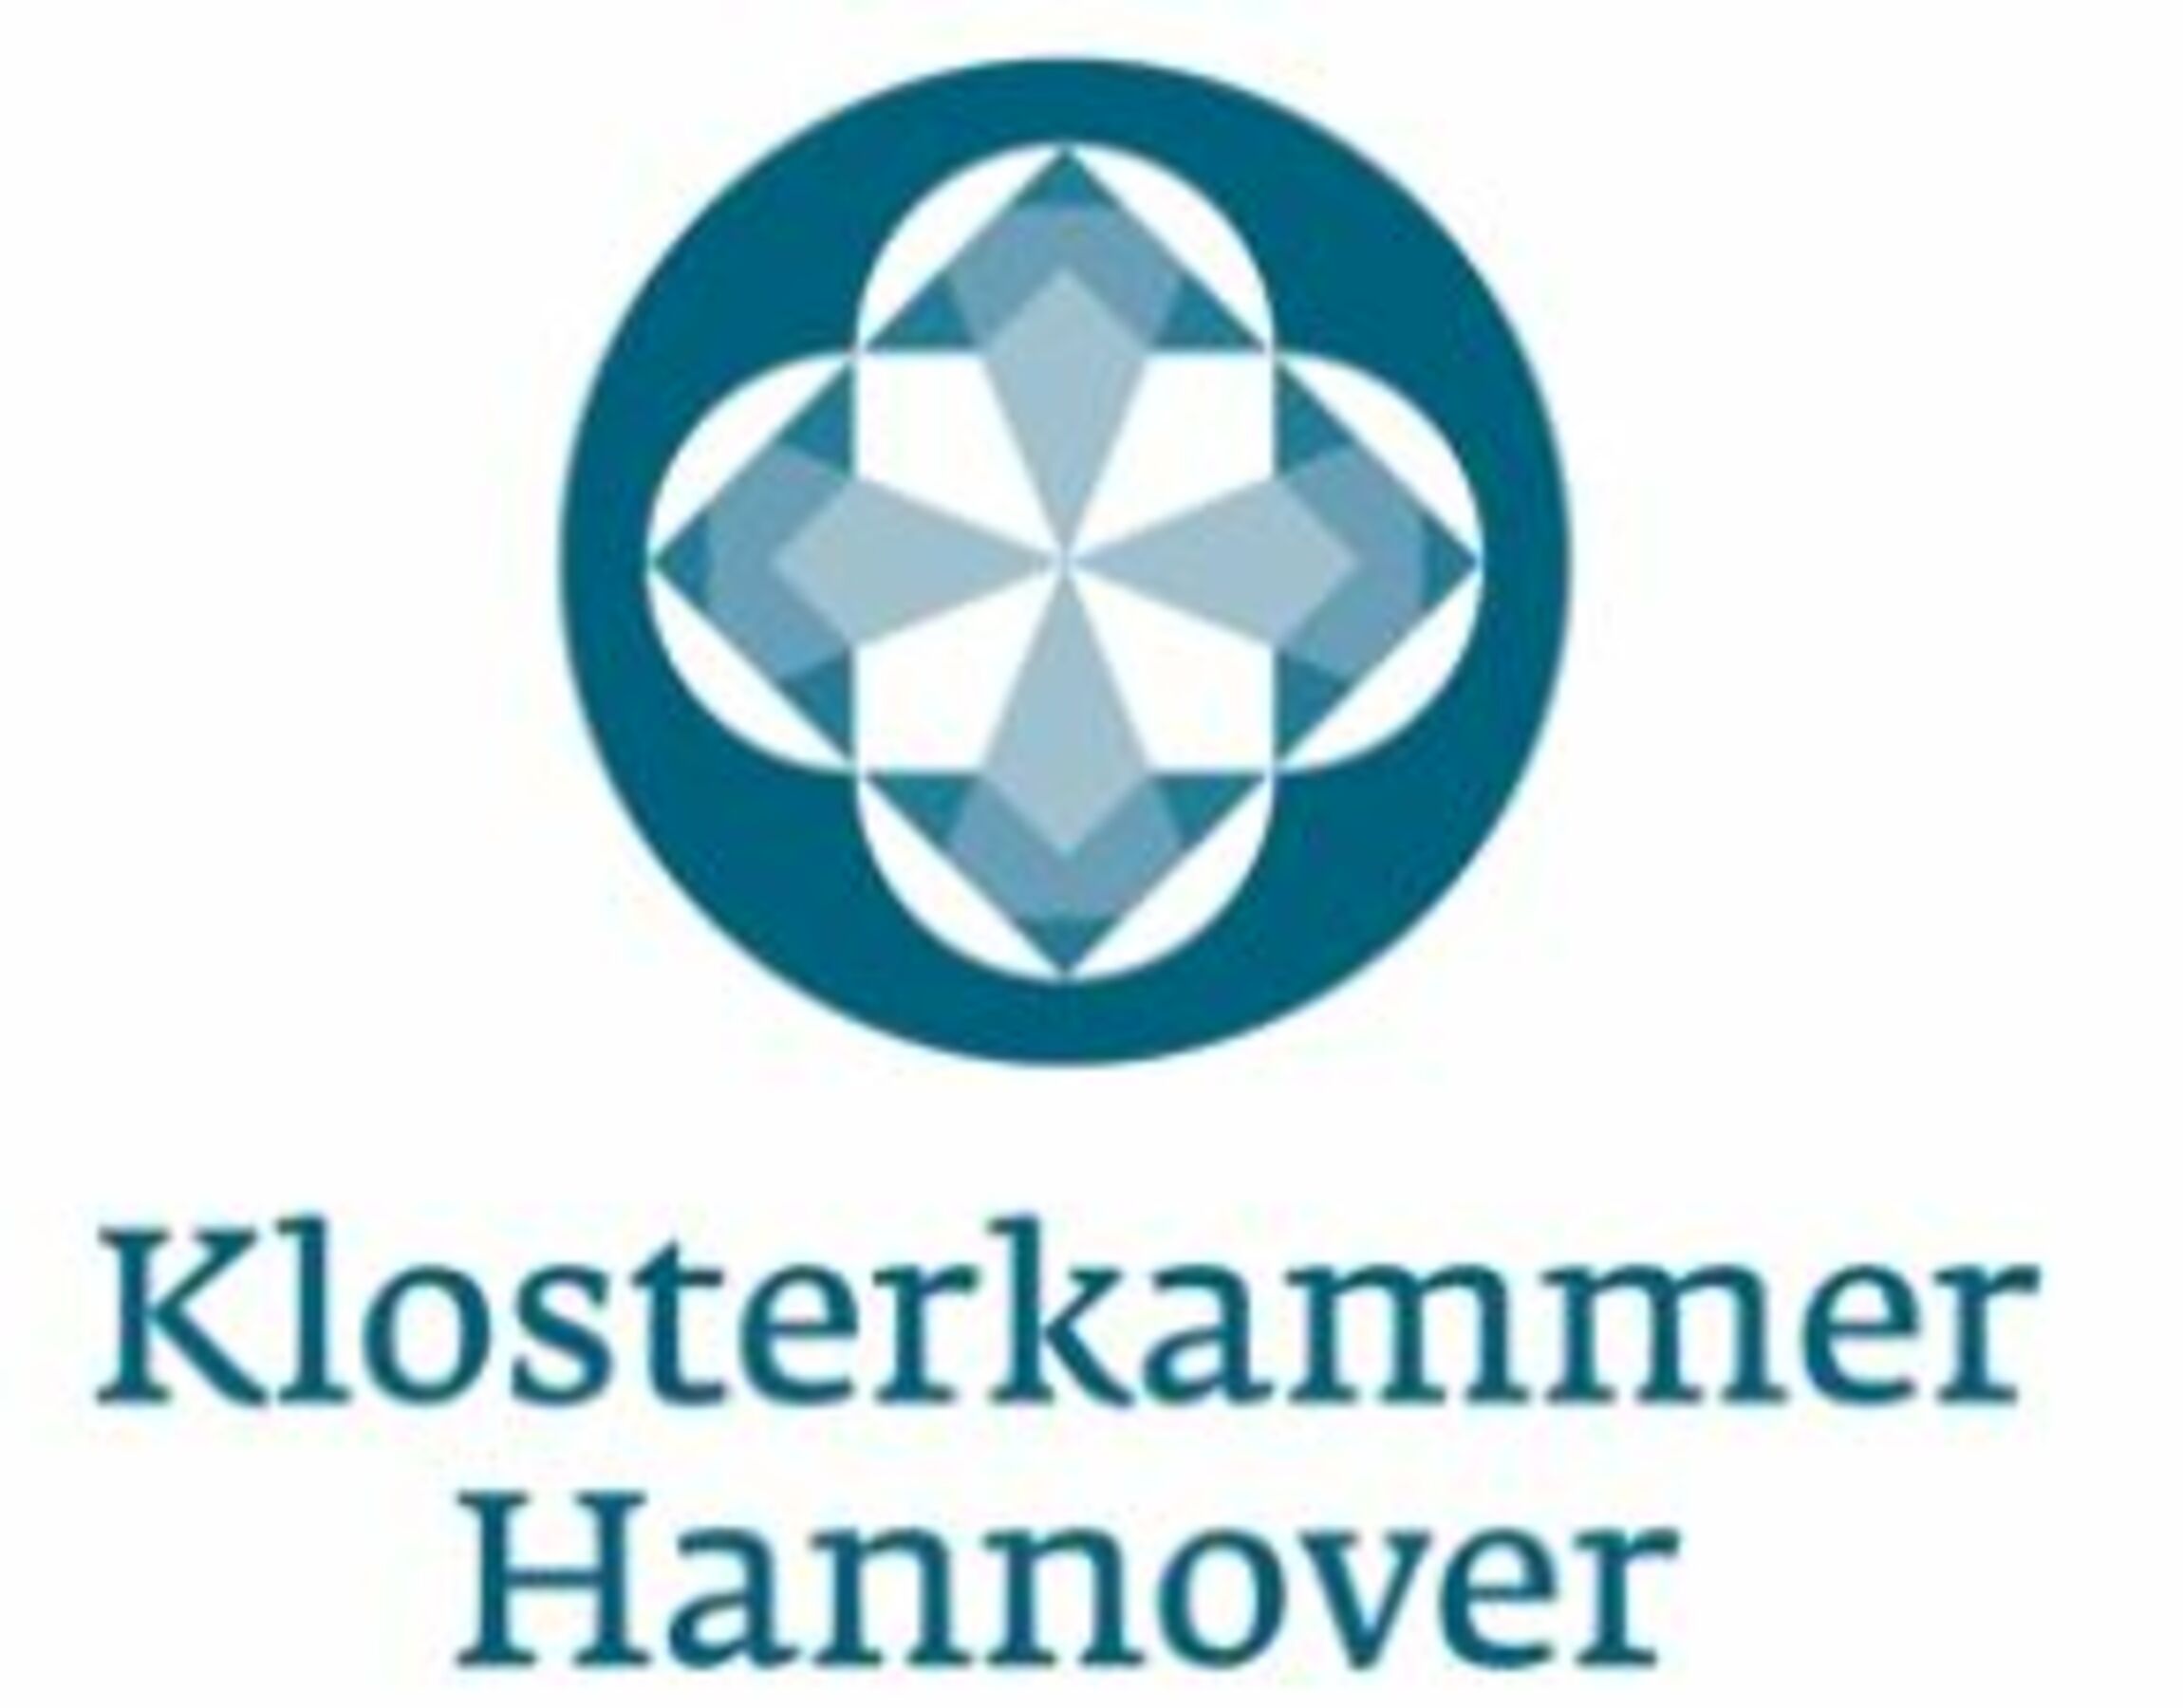 Logo Klosterkammer